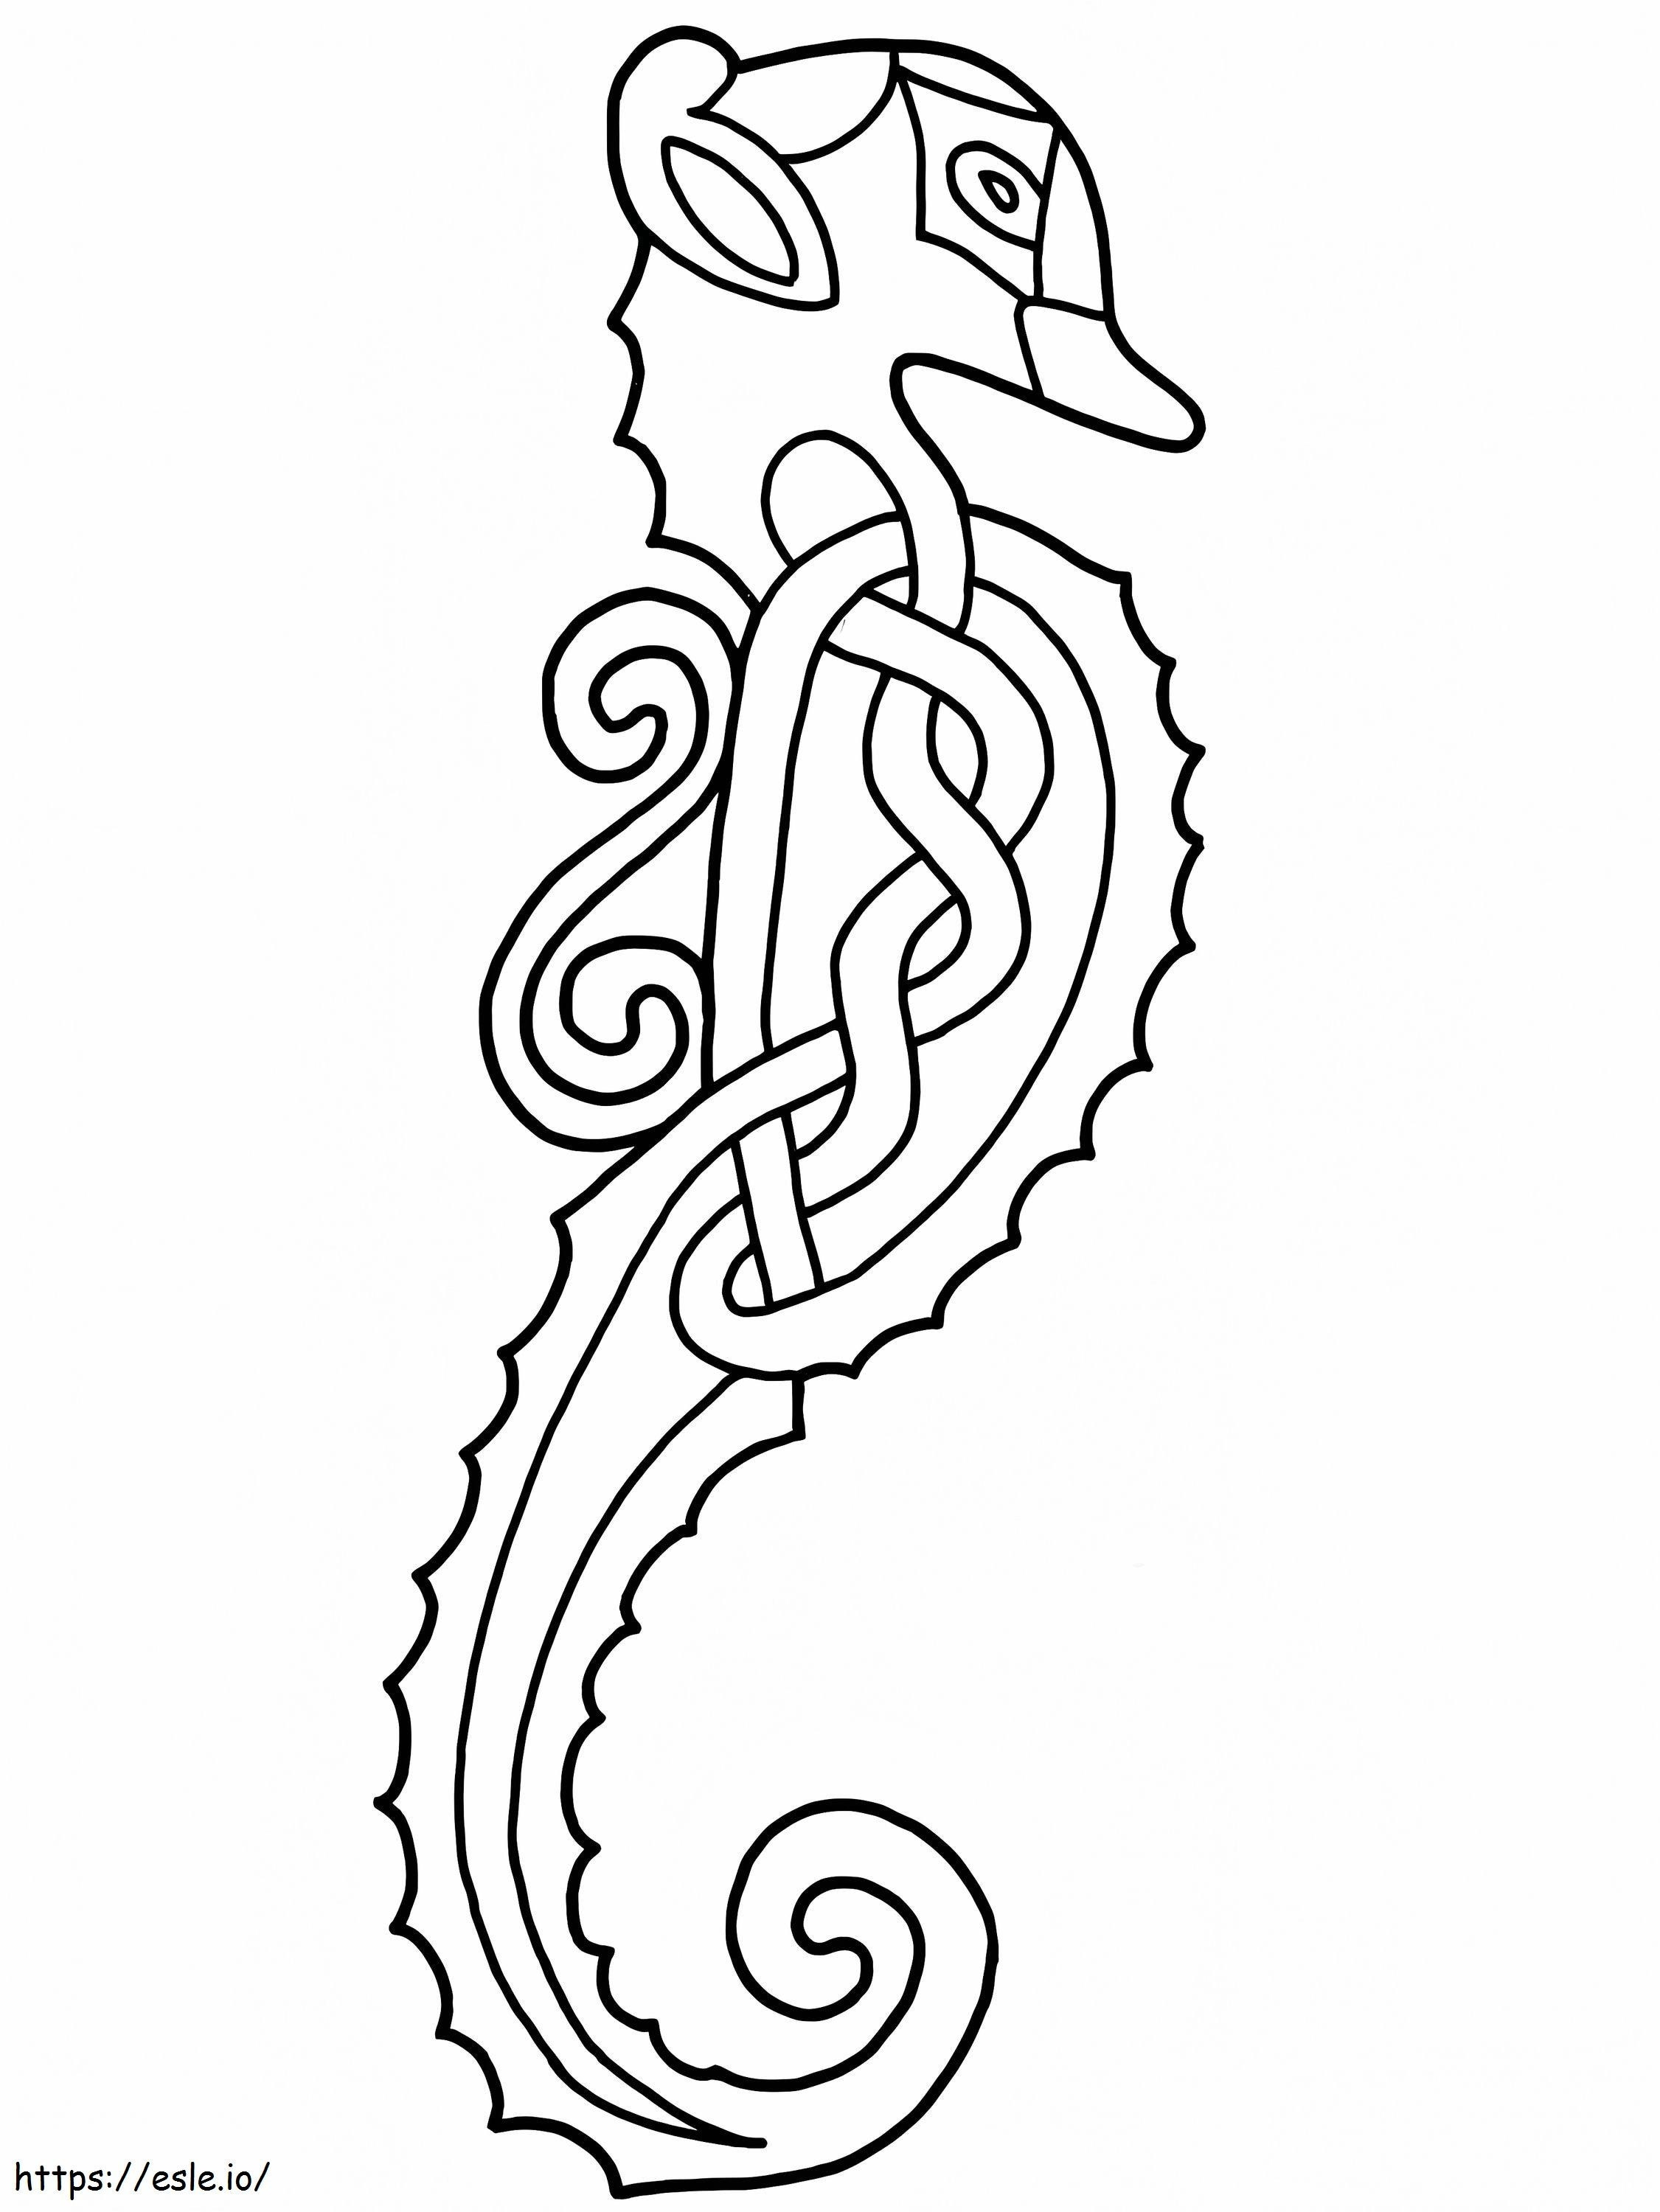 Desain Kuda Laut Celtic Gambar Mewarnai